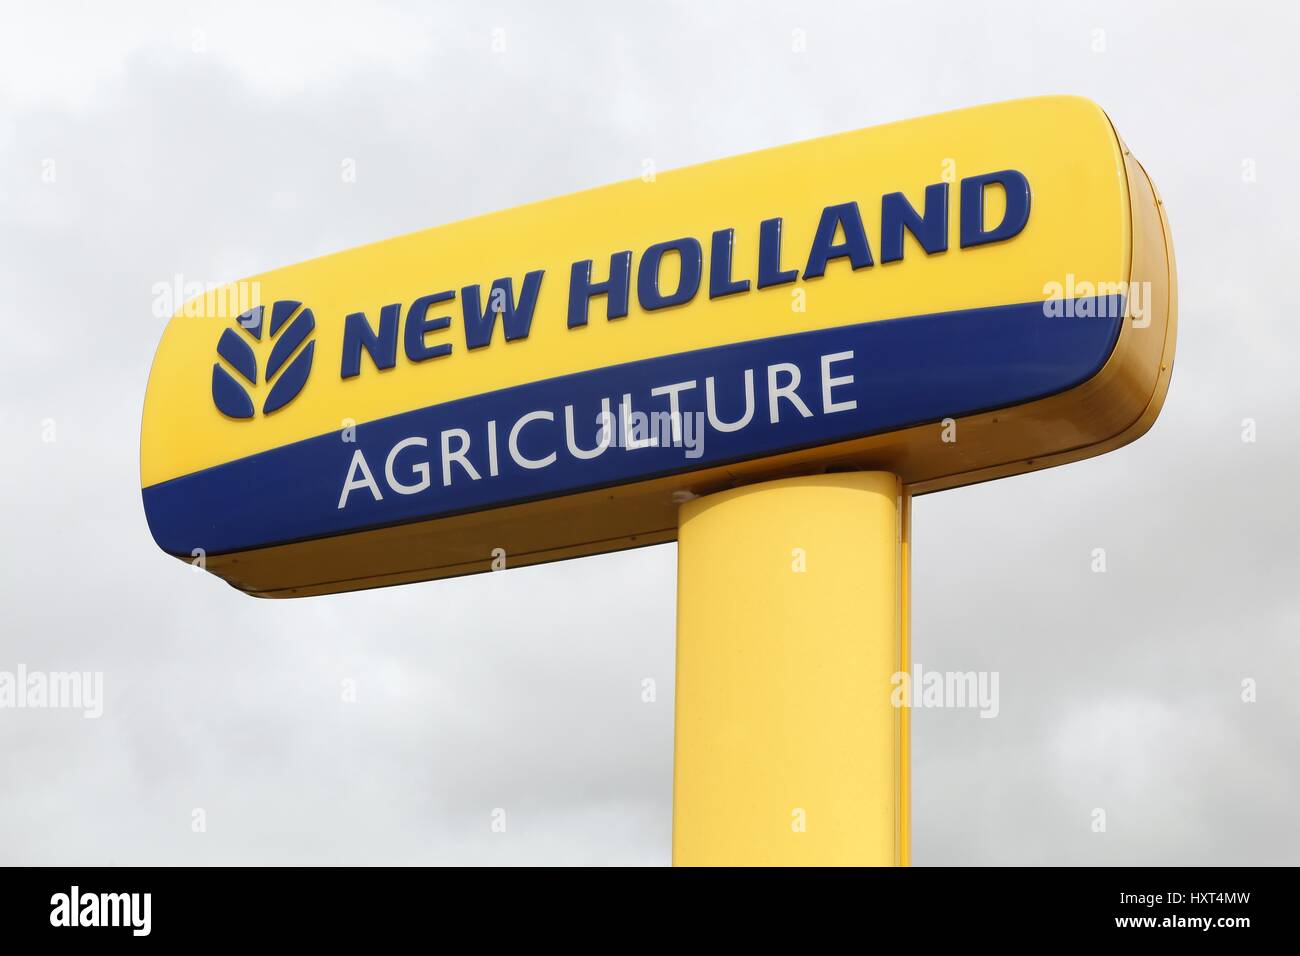 Chateaudin, Francia - 19 Marzo 2017: New Holland Agriculture logo su un palo. New Holland è una marca di attrezzature agricole Foto Stock